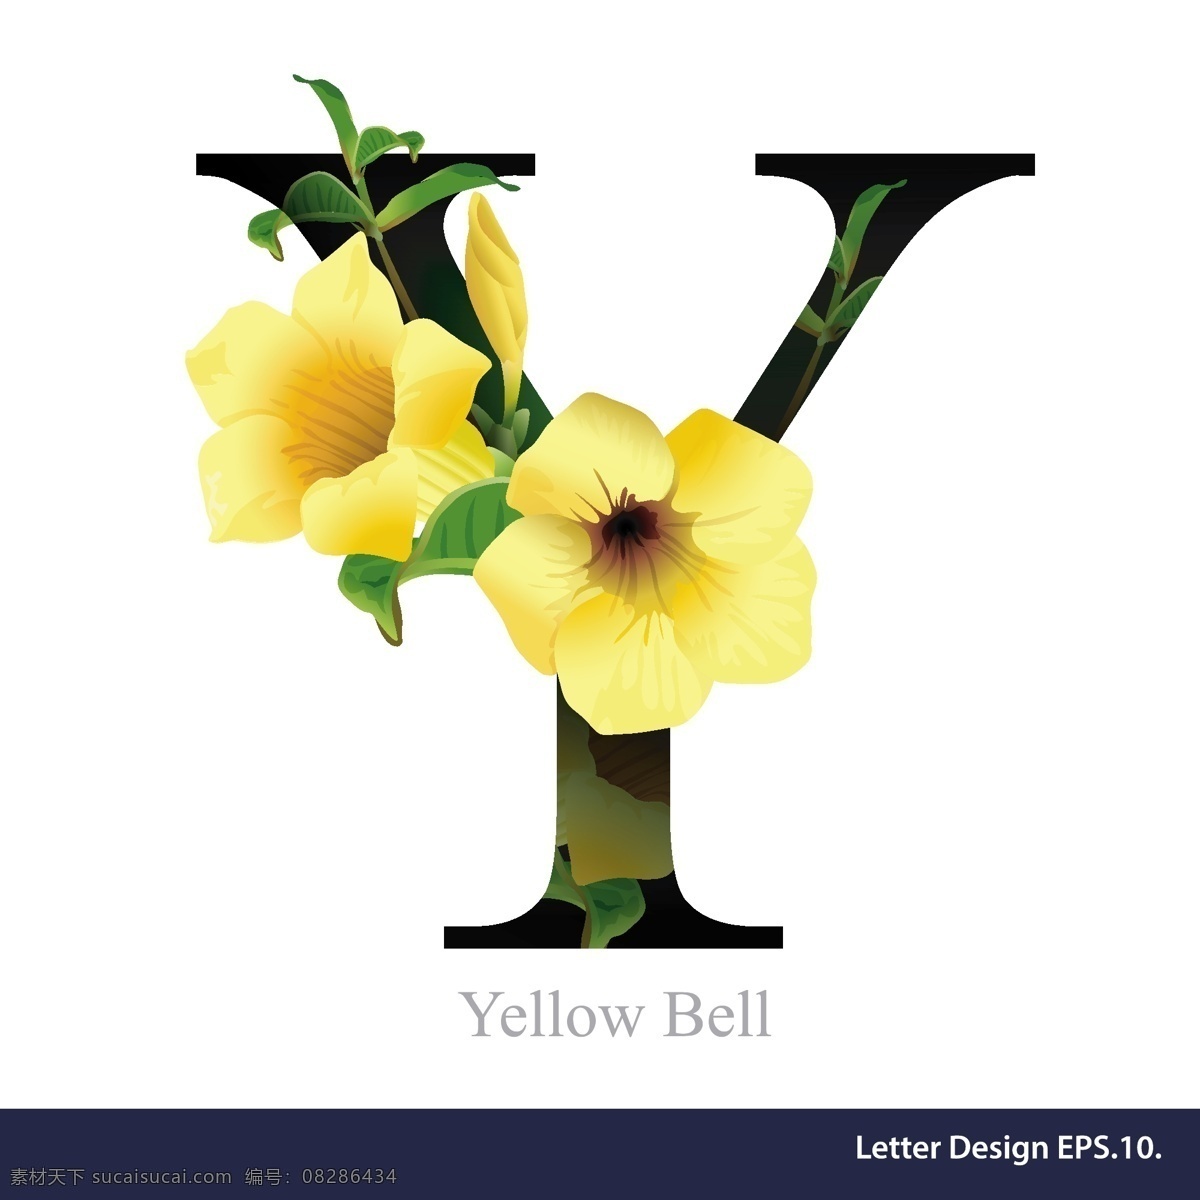 黄色 花卉 英文 字母 字体 花朵 组合 搭配 矢量 源文件